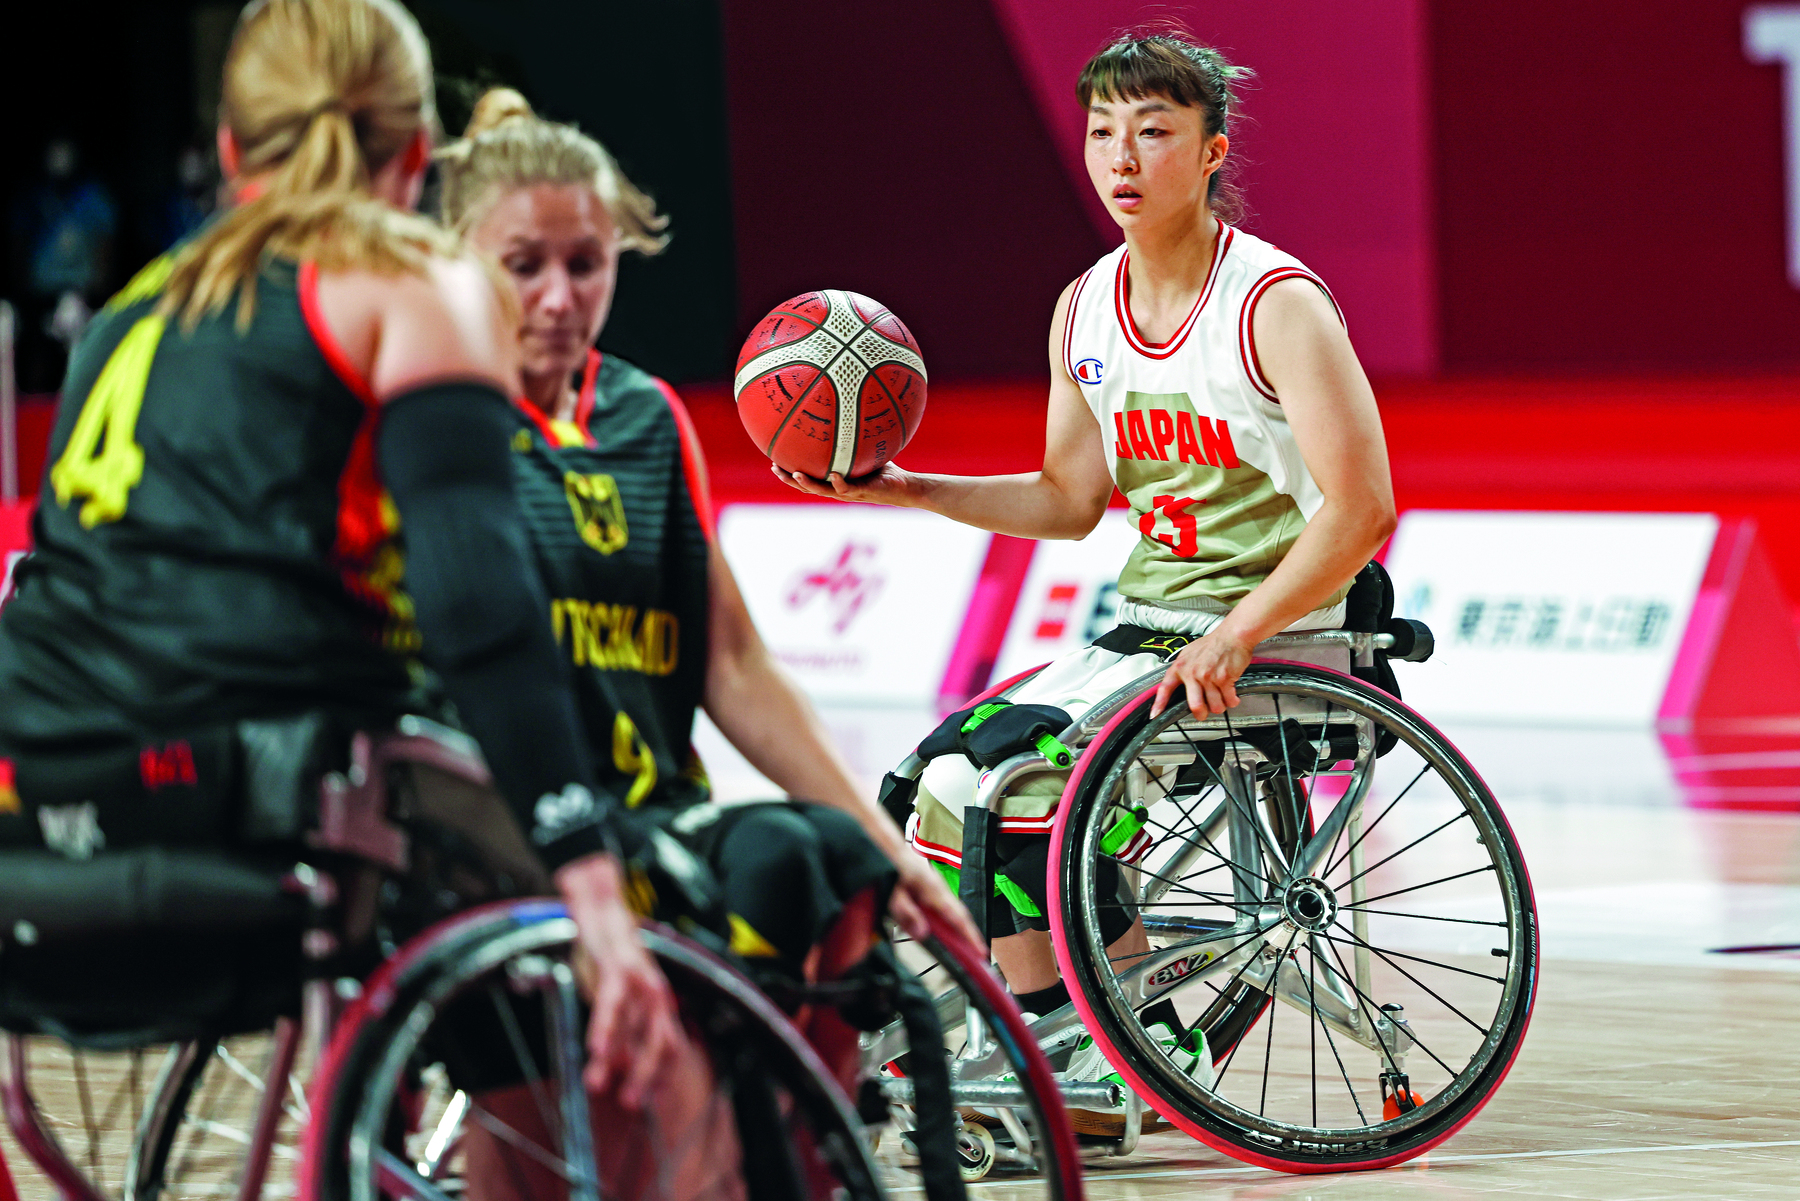 Fotografia. Atletas cadeirantes das equipes femininas de Alemanha e Japão disputando uma partida de basquete. A bola está nas mãos de uma das atletas do Japão.